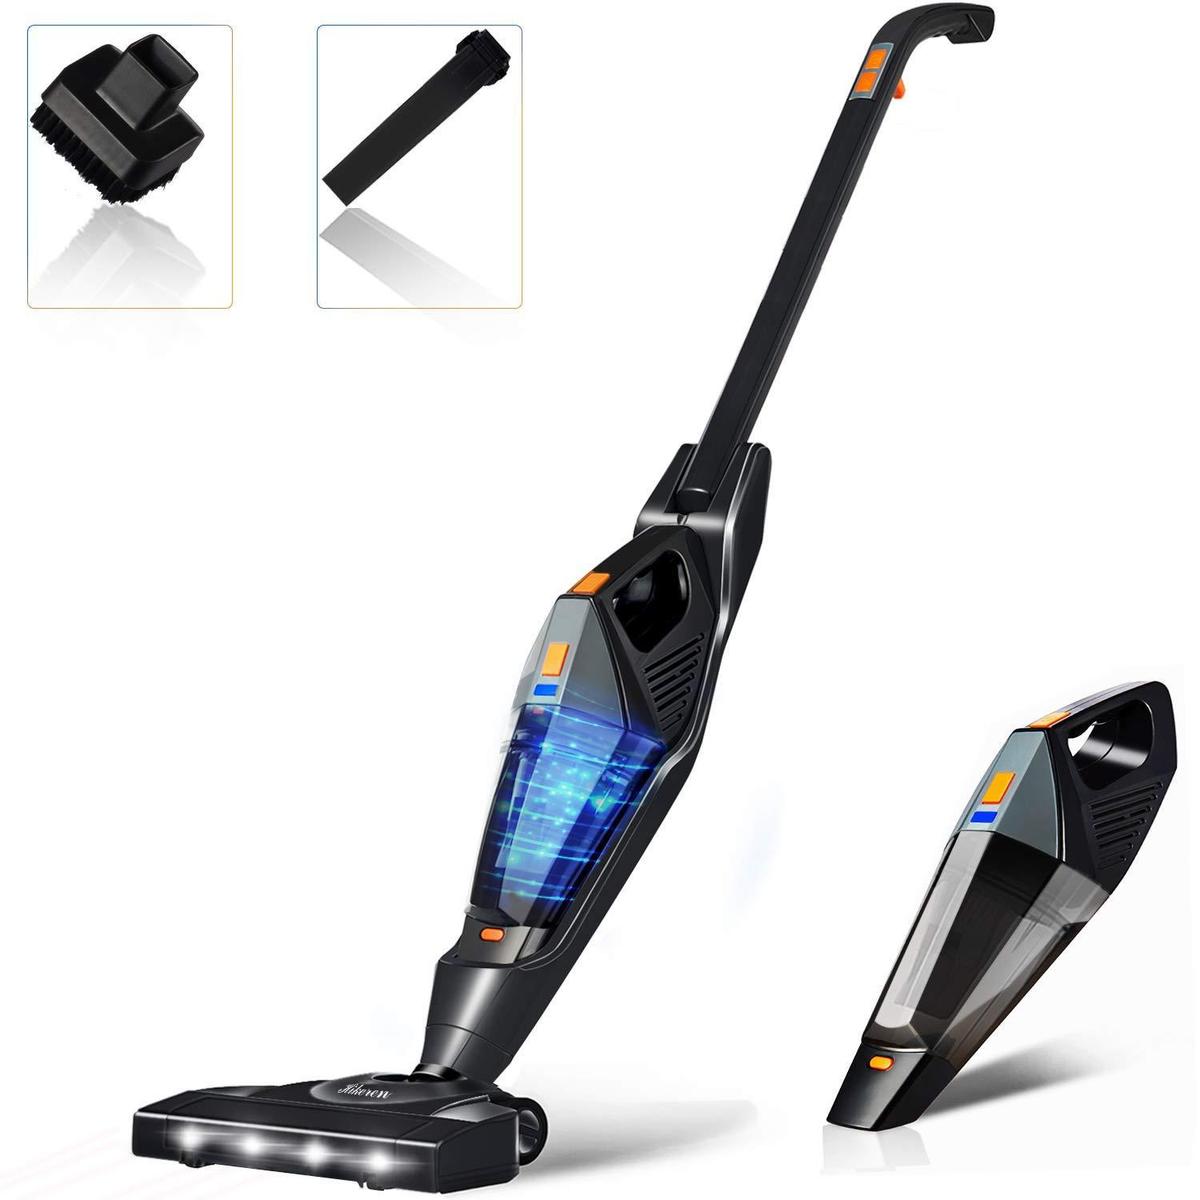 Hikeren Cordless Stick Vacuum Cleaner, $89.99 MSRP